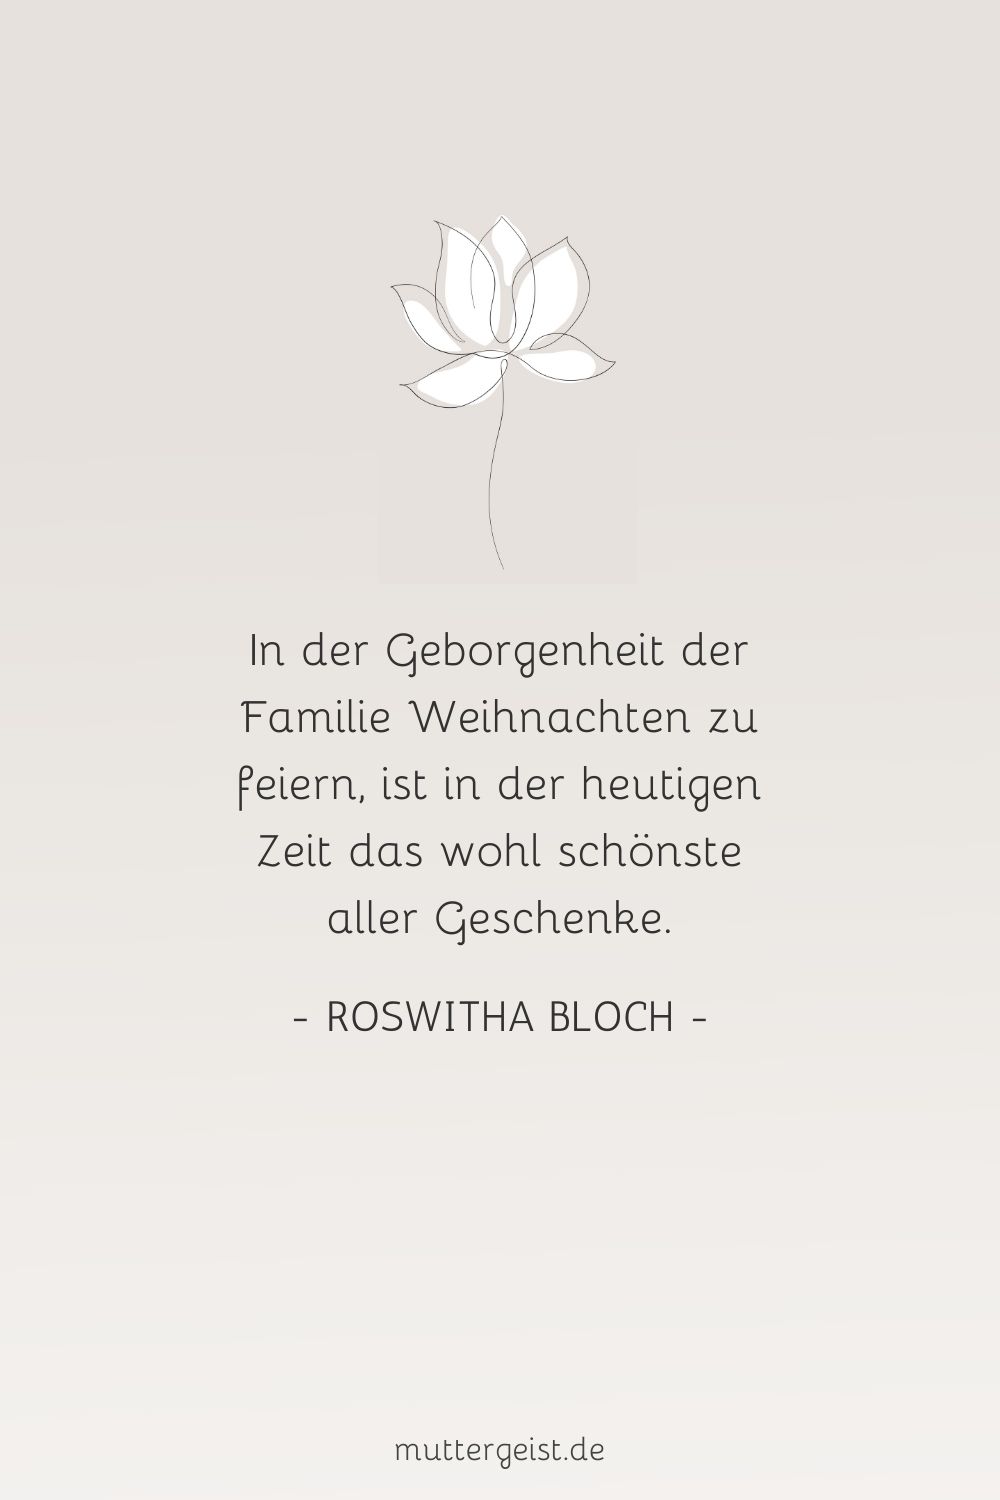 weise Worte über die Geborgenheit in der Familie von Roswitha Bloch